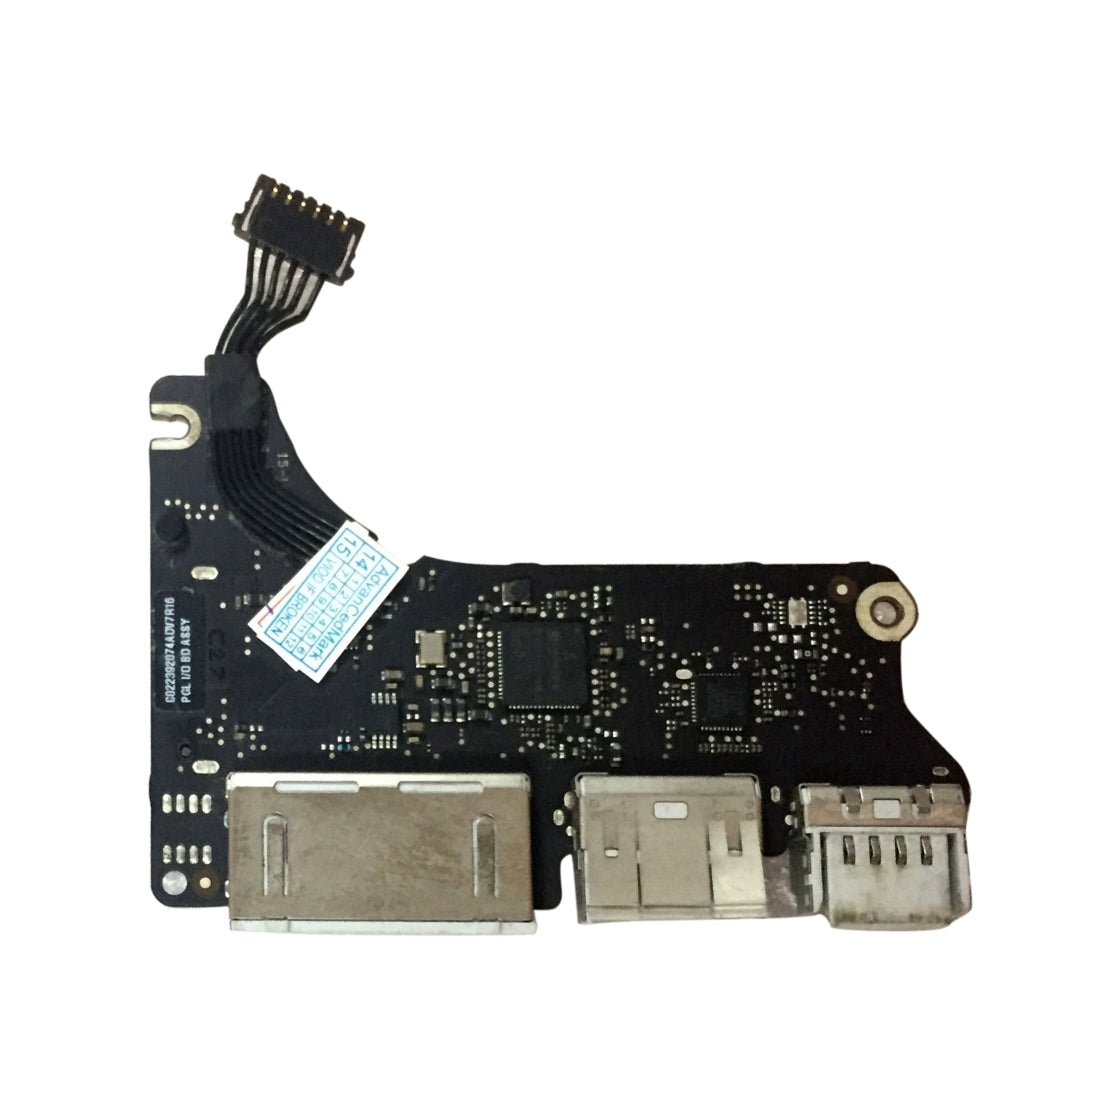 USB Power Board Apple MacBook Pro Retina 13.3 A1425 MD212 MD213